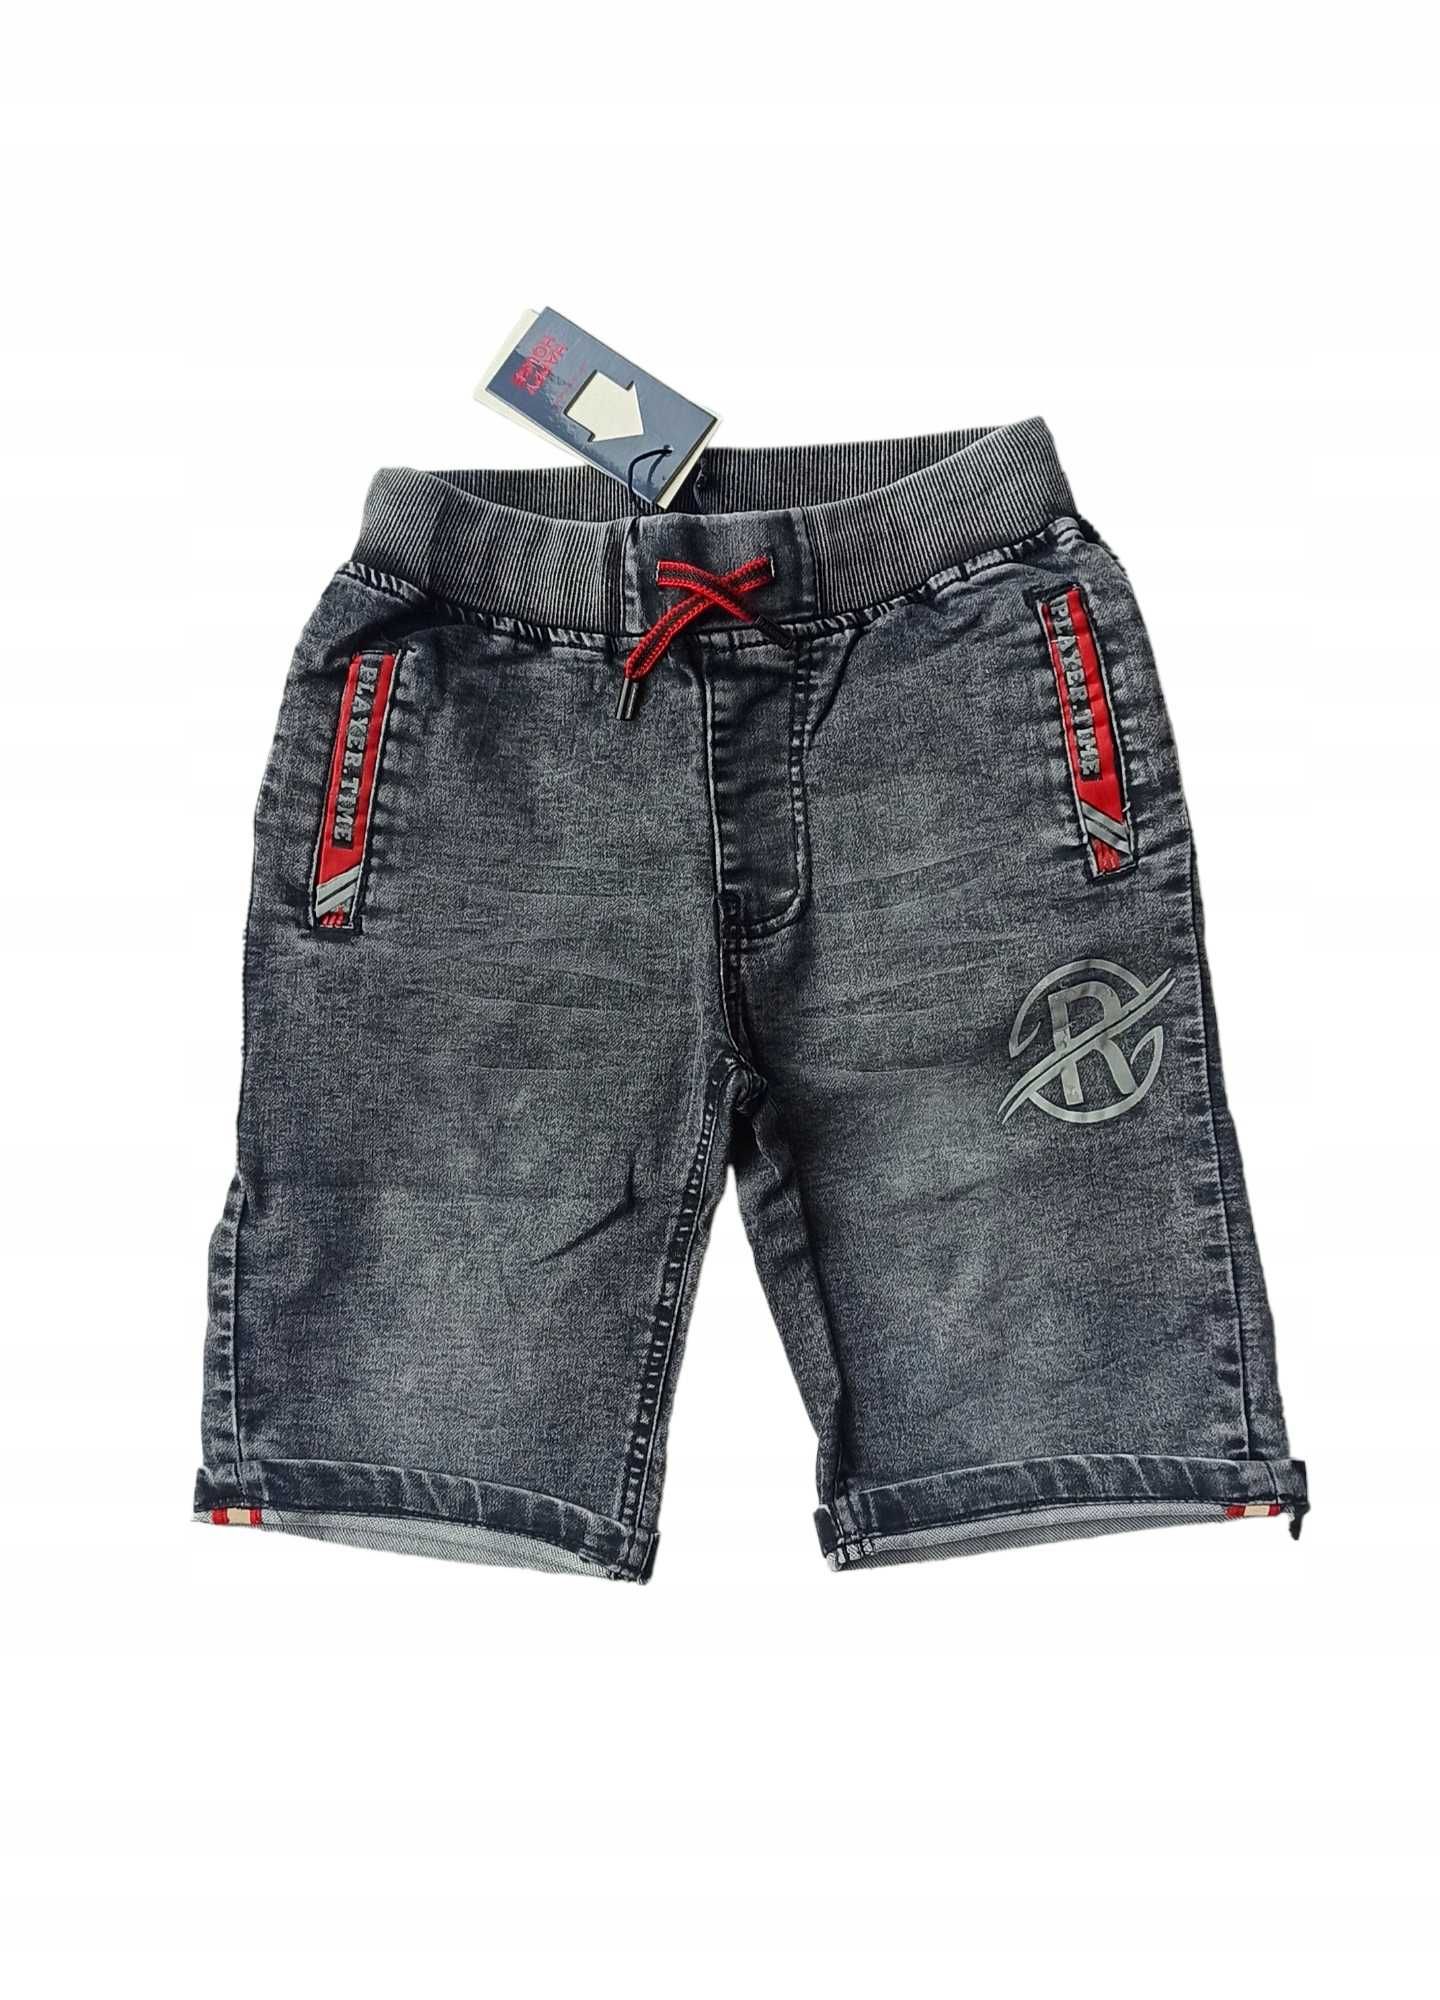 Krótkie spodenki szorty jeansowe dla chłopca nowy 146-152